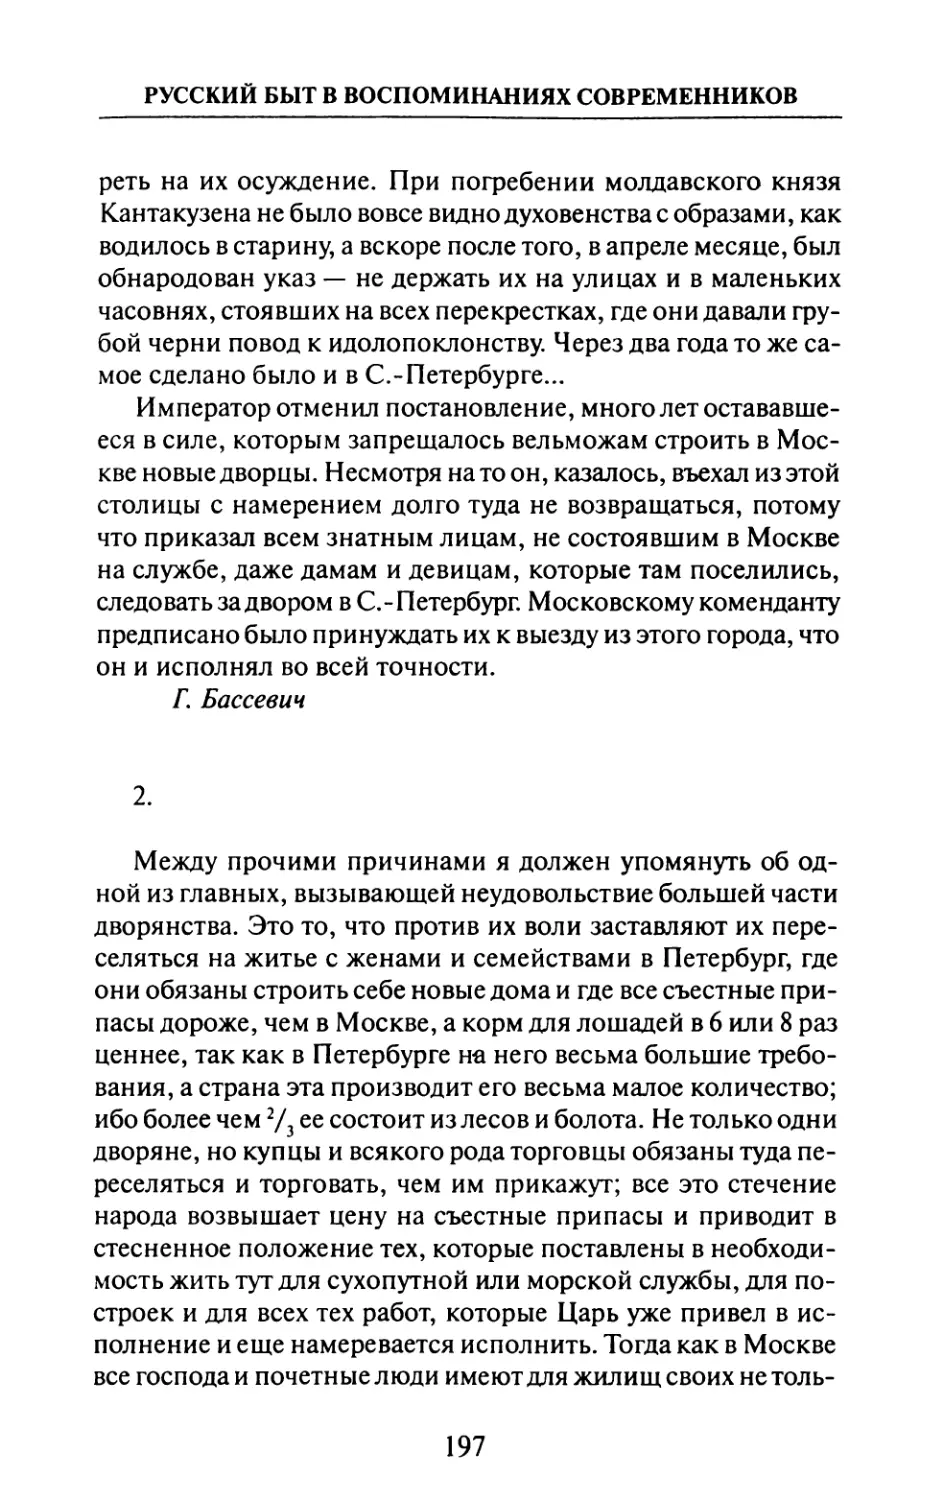 2.  Дж.  Перри.  «Записки  о  бытности  в  России  с  1698 по  1715  гг.»